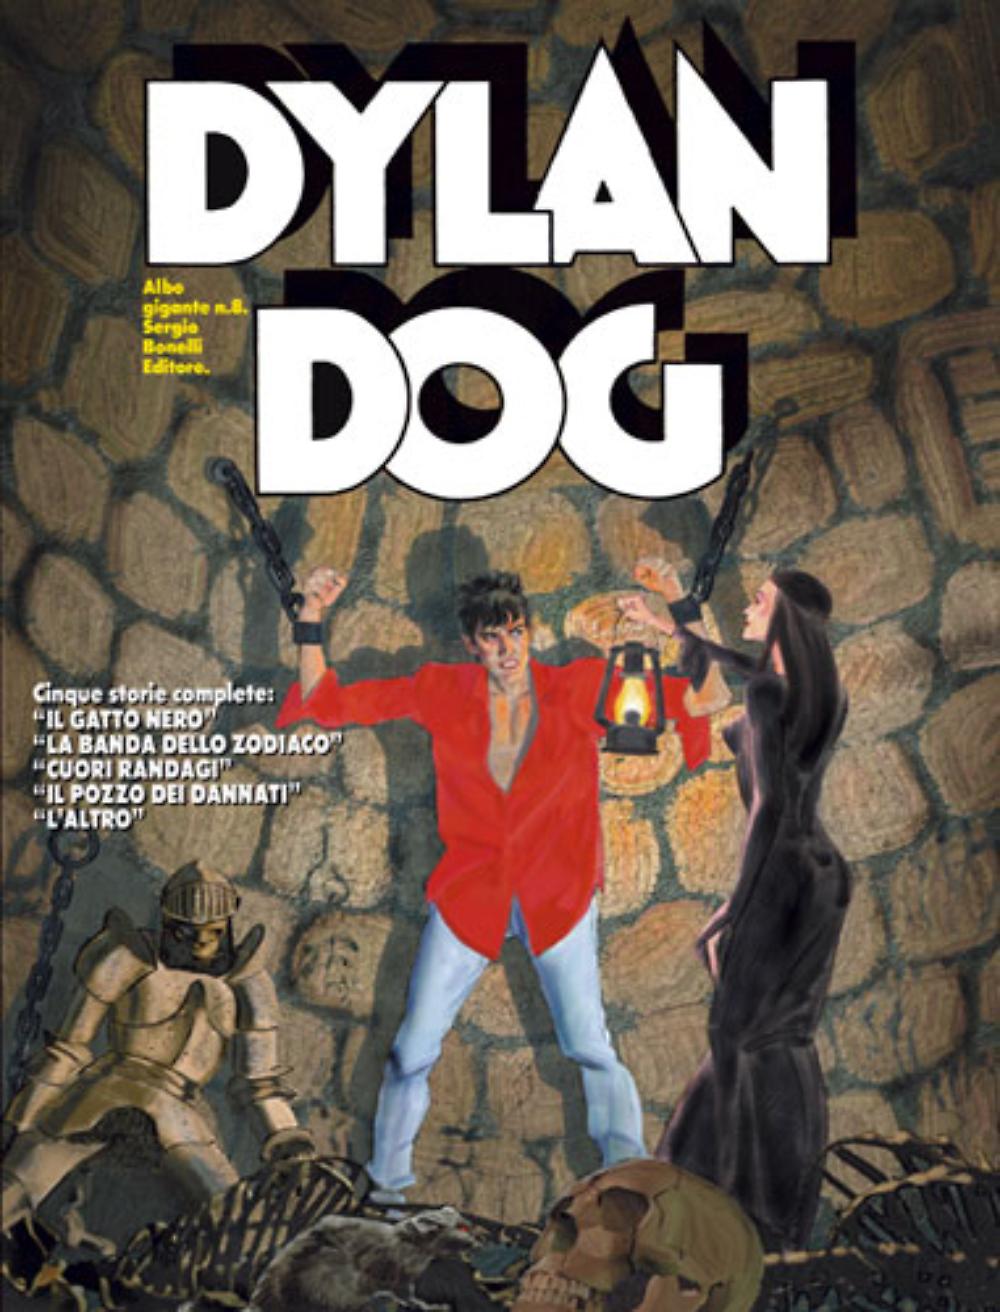 DPBOT – Fumetto – Bonelli – Dylan Dog Gigante # 8 ...